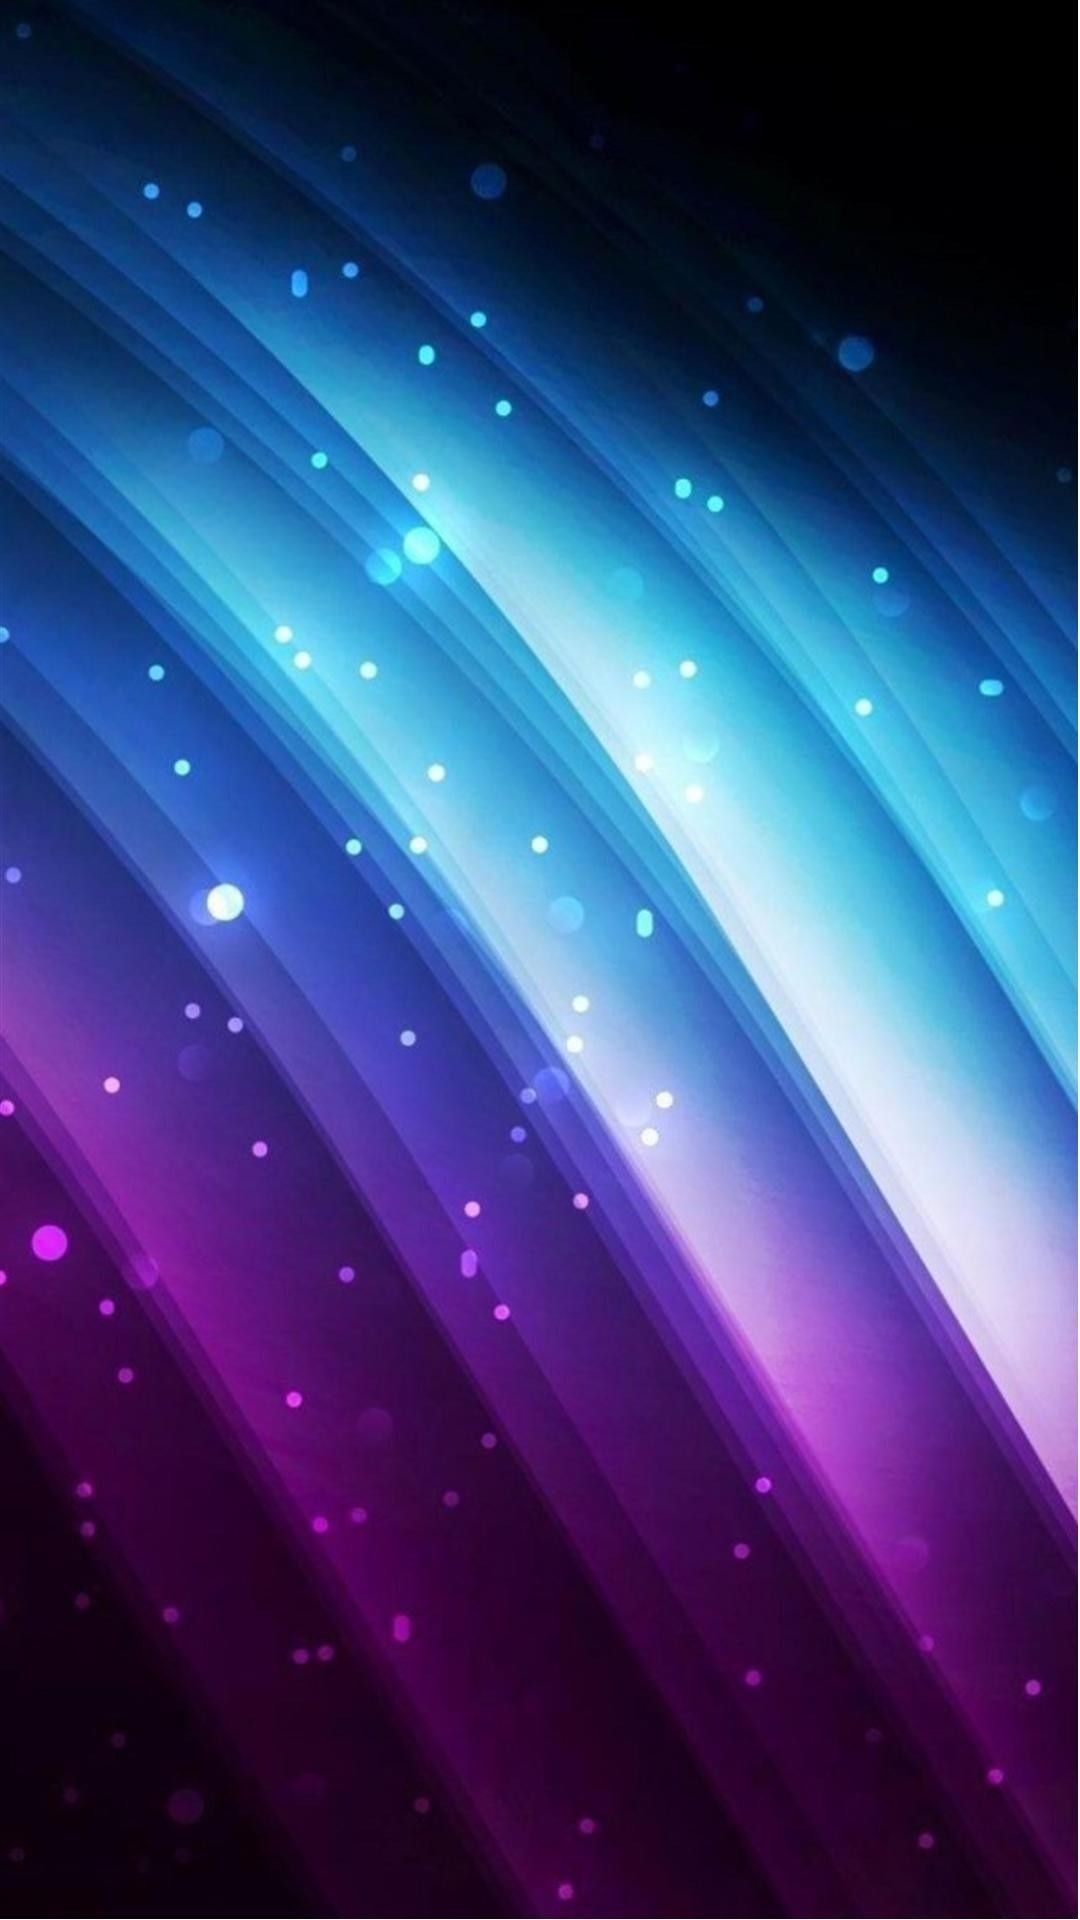 携帯電話の壁紙とテーマ,青い,バイオレット,紫の,光,空